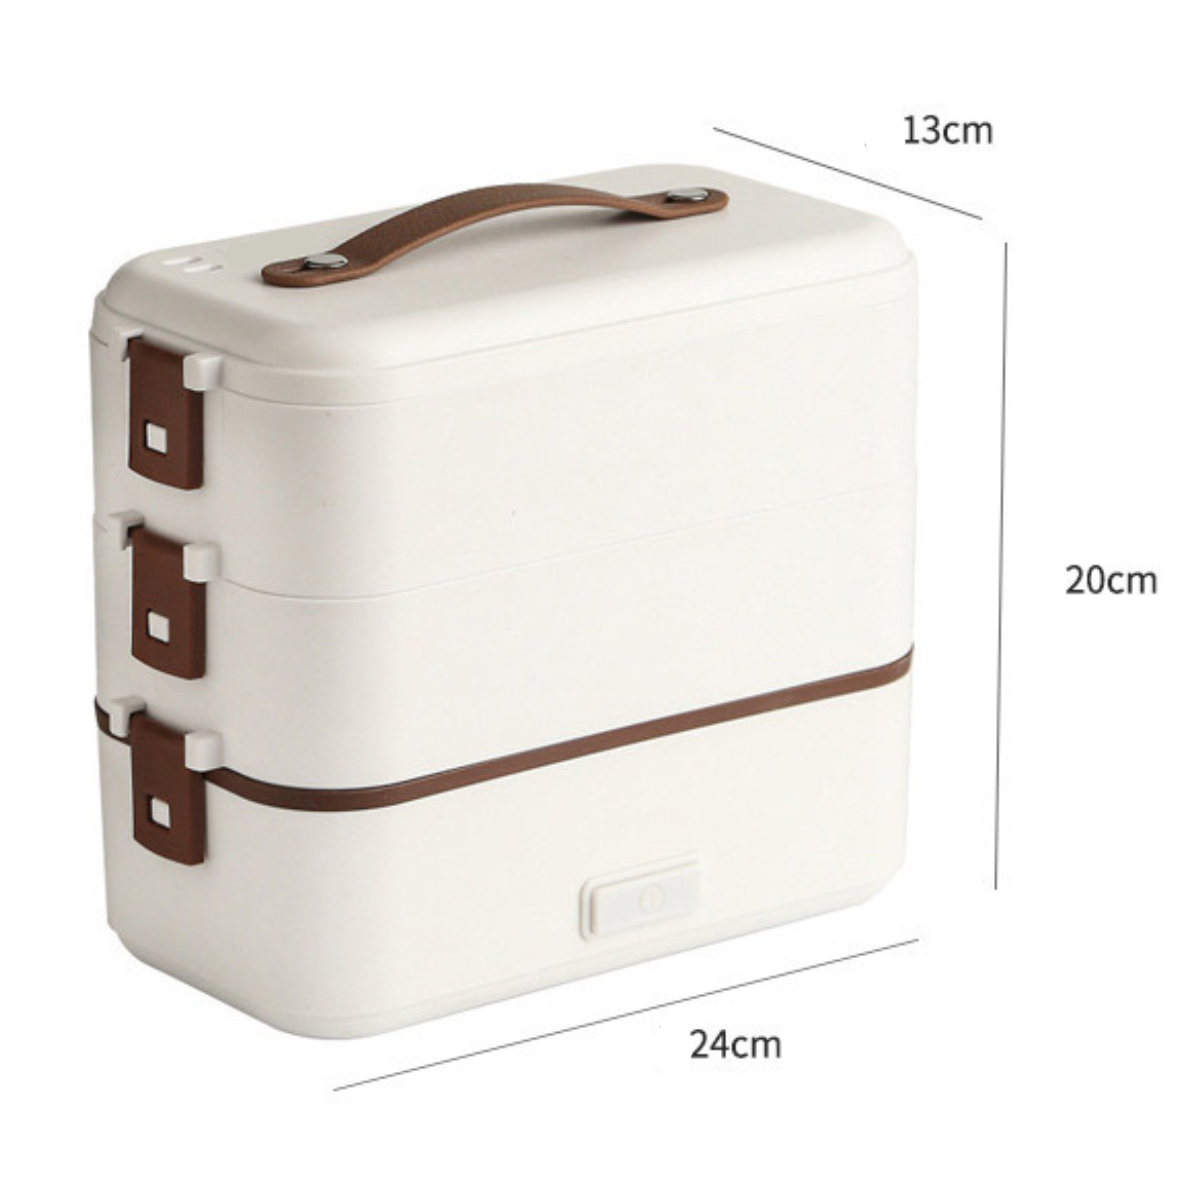 Lunch-Box Erwärmung, schnelle leicht isolierte tragbar&langlebig, UWOT reinigen zu dreischichtige 300W Lunchbox: